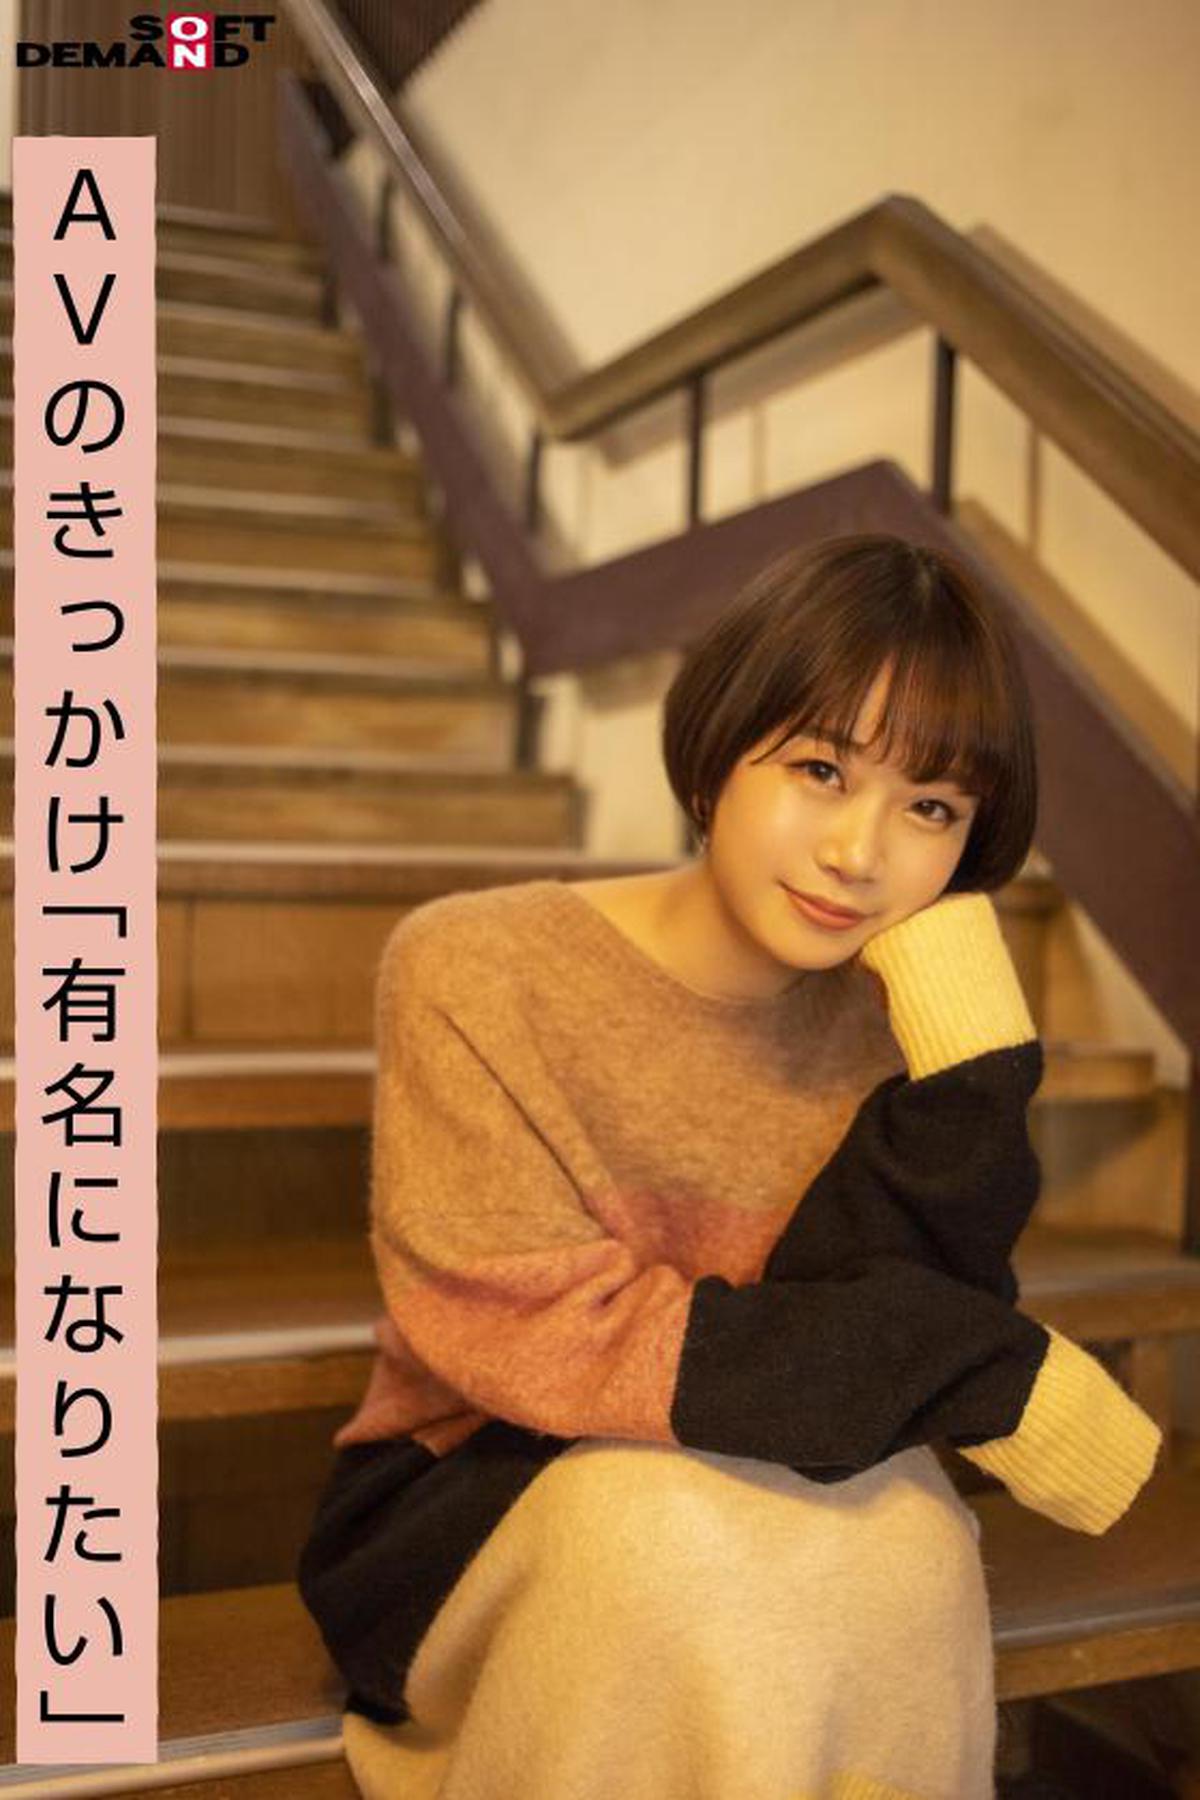 107EMOI-015 Chica Emo / Primer Gonzo en Yukata / "Quizás me gusta SM Poi" / ¡El tema sigue hirviendo! !! / Estudiante de segundo año universitario activo / Mao Watanabe (19)